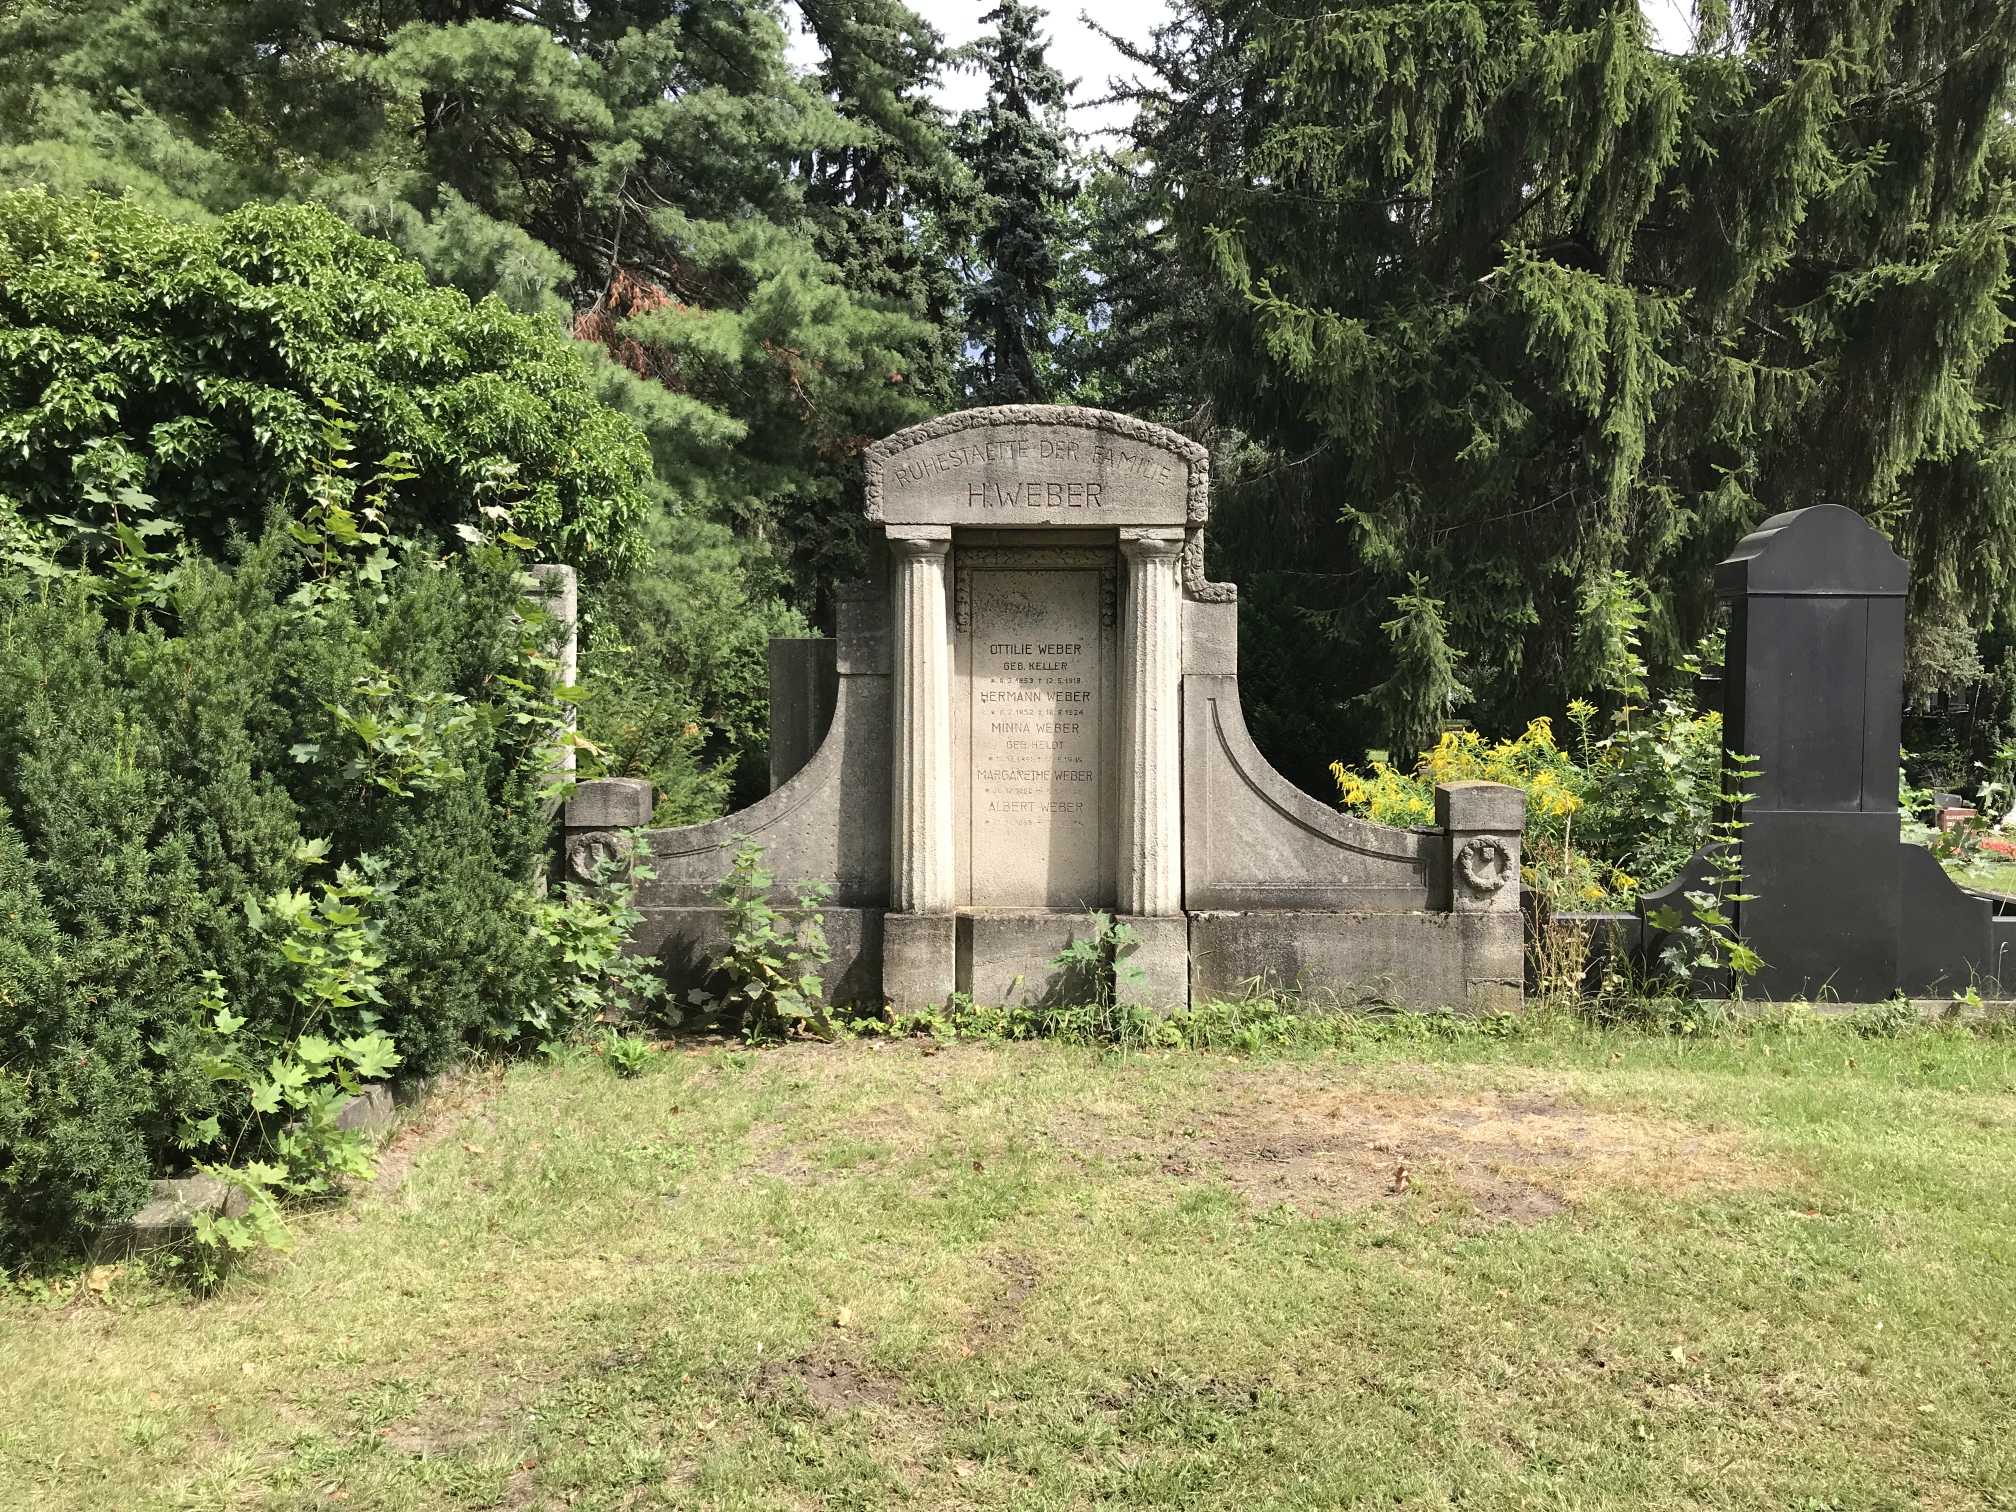 Grabstein Margarethe Weber, Friedhof der St. Thomas Gemeine, Berlin-Neukölln